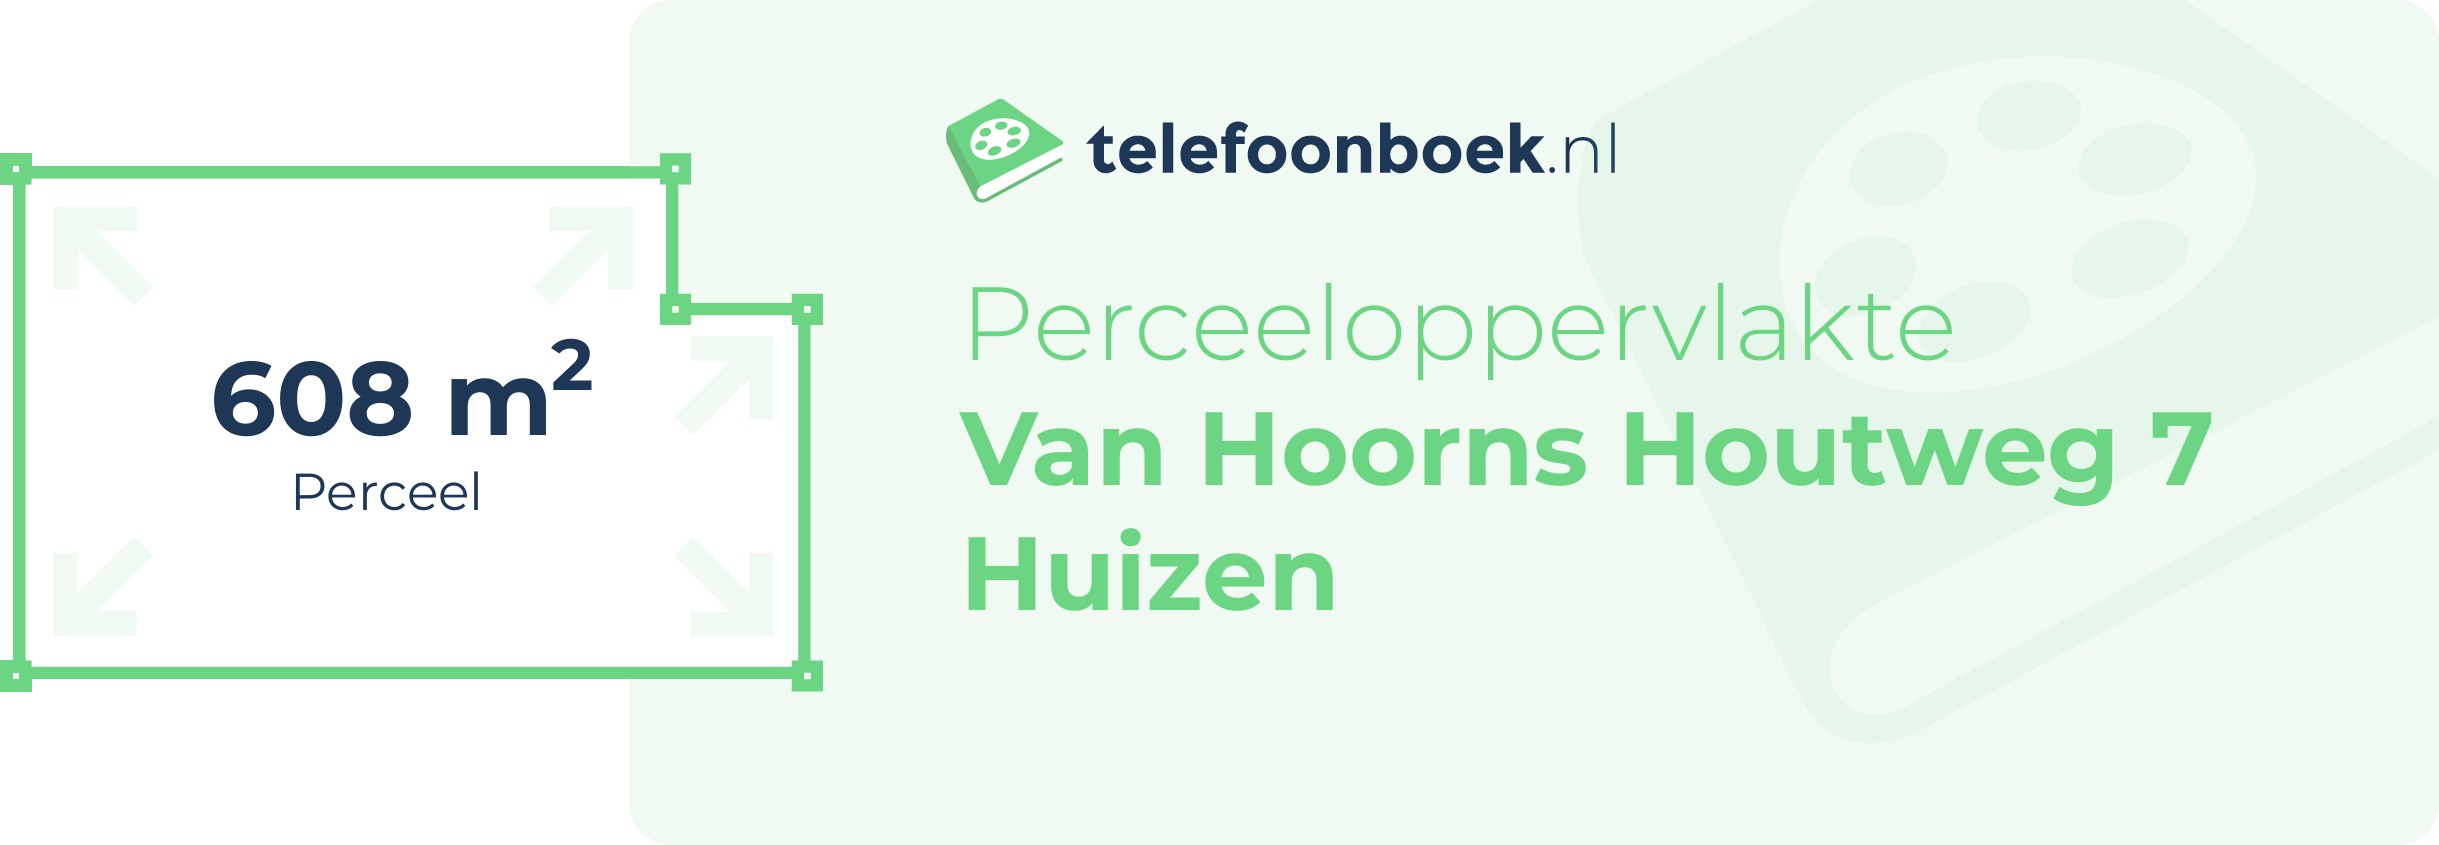 Perceeloppervlakte Van Hoorns Houtweg 7 Huizen